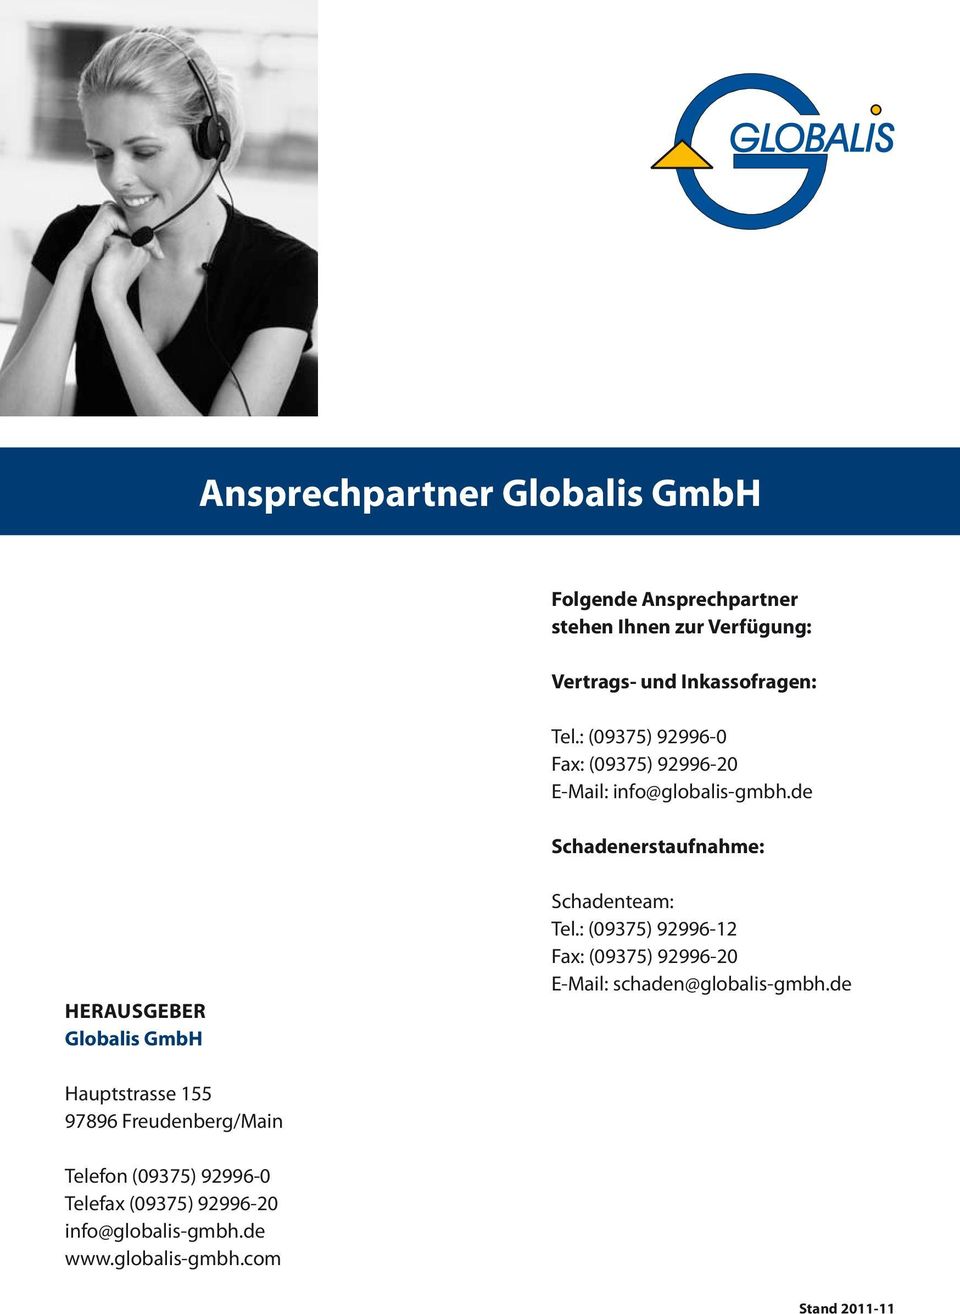 de Schadenerstaufnahme: Herausgeber Globalis GmbH Schadenteam: Tel.